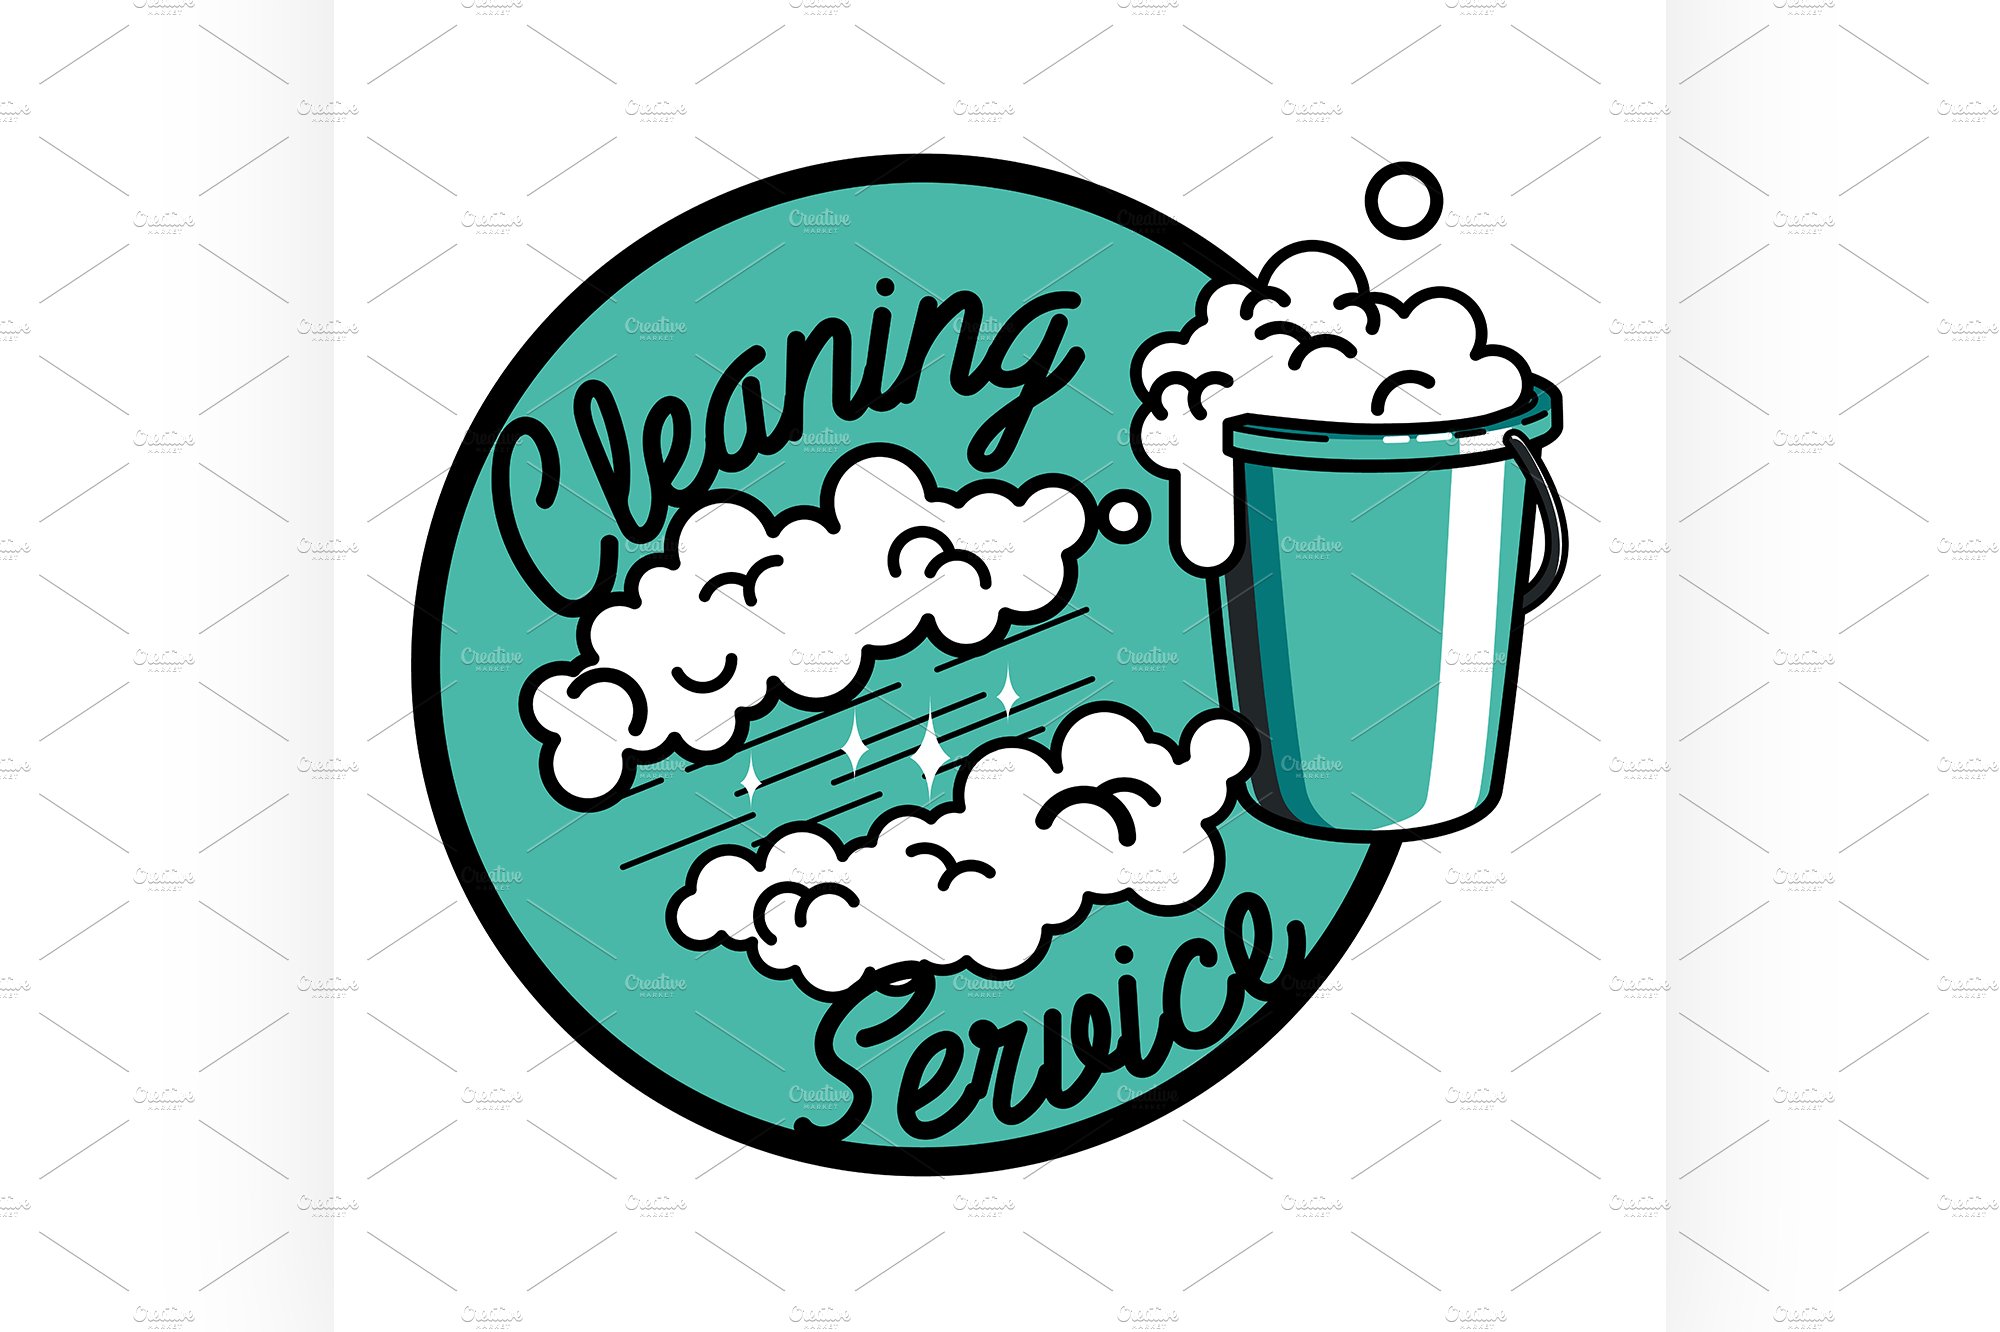 vintage cleaning service emblem cover image.